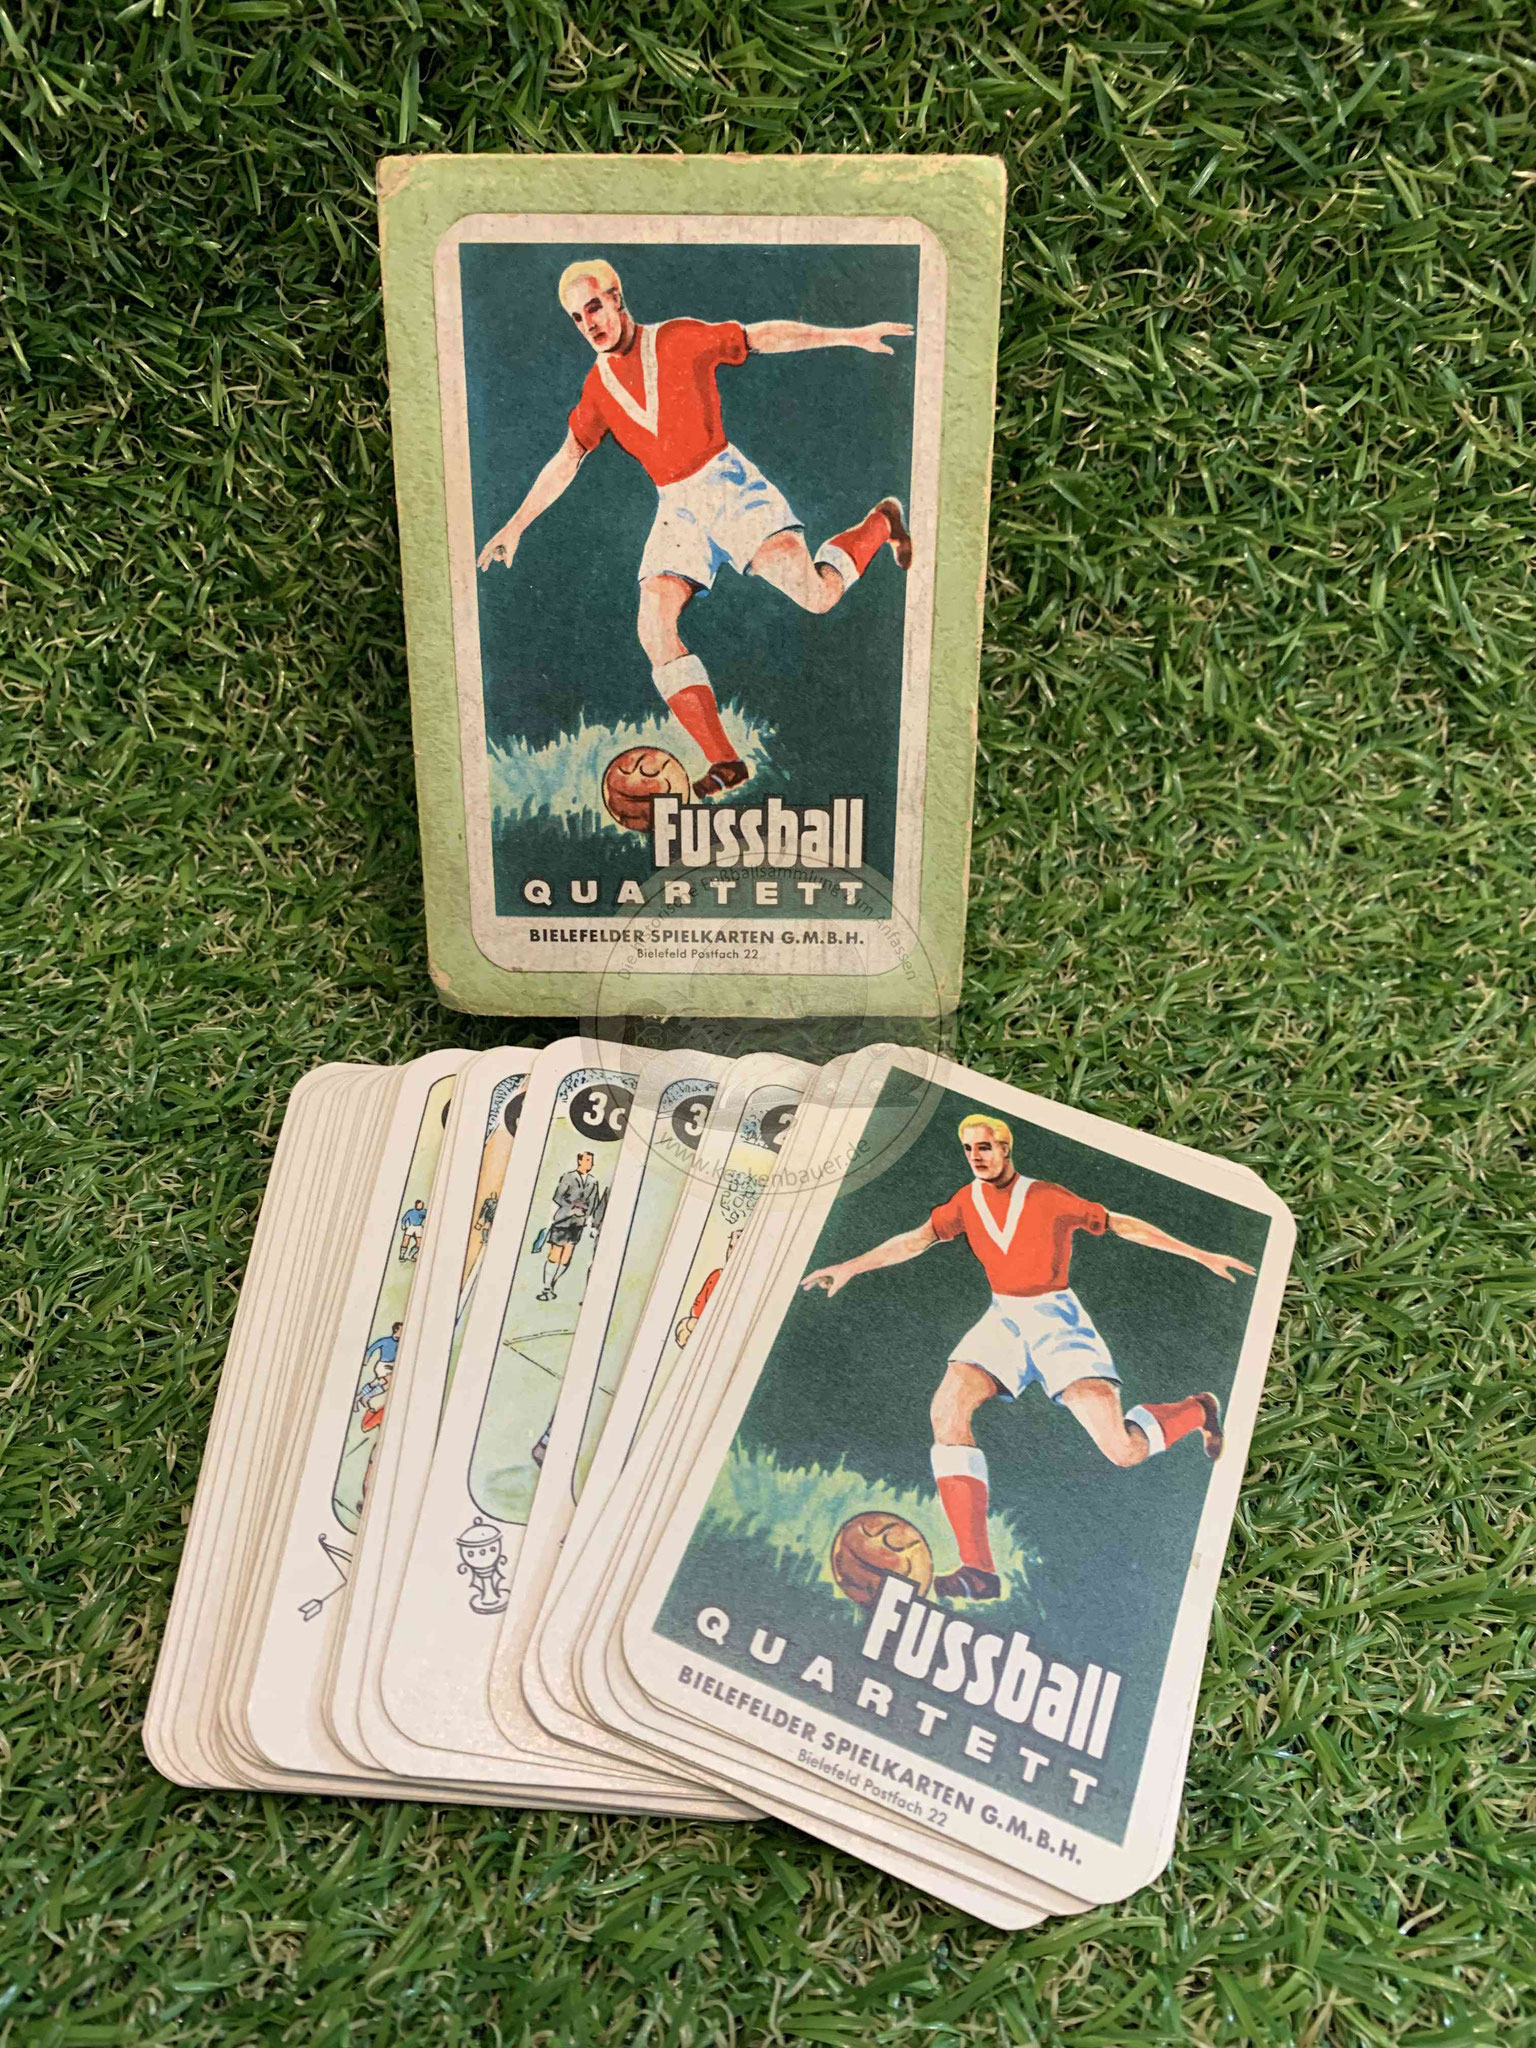 Fussball Quartett von der Bielefelder Spielkarten GmbH grüne eckige Hülle ca. 1958